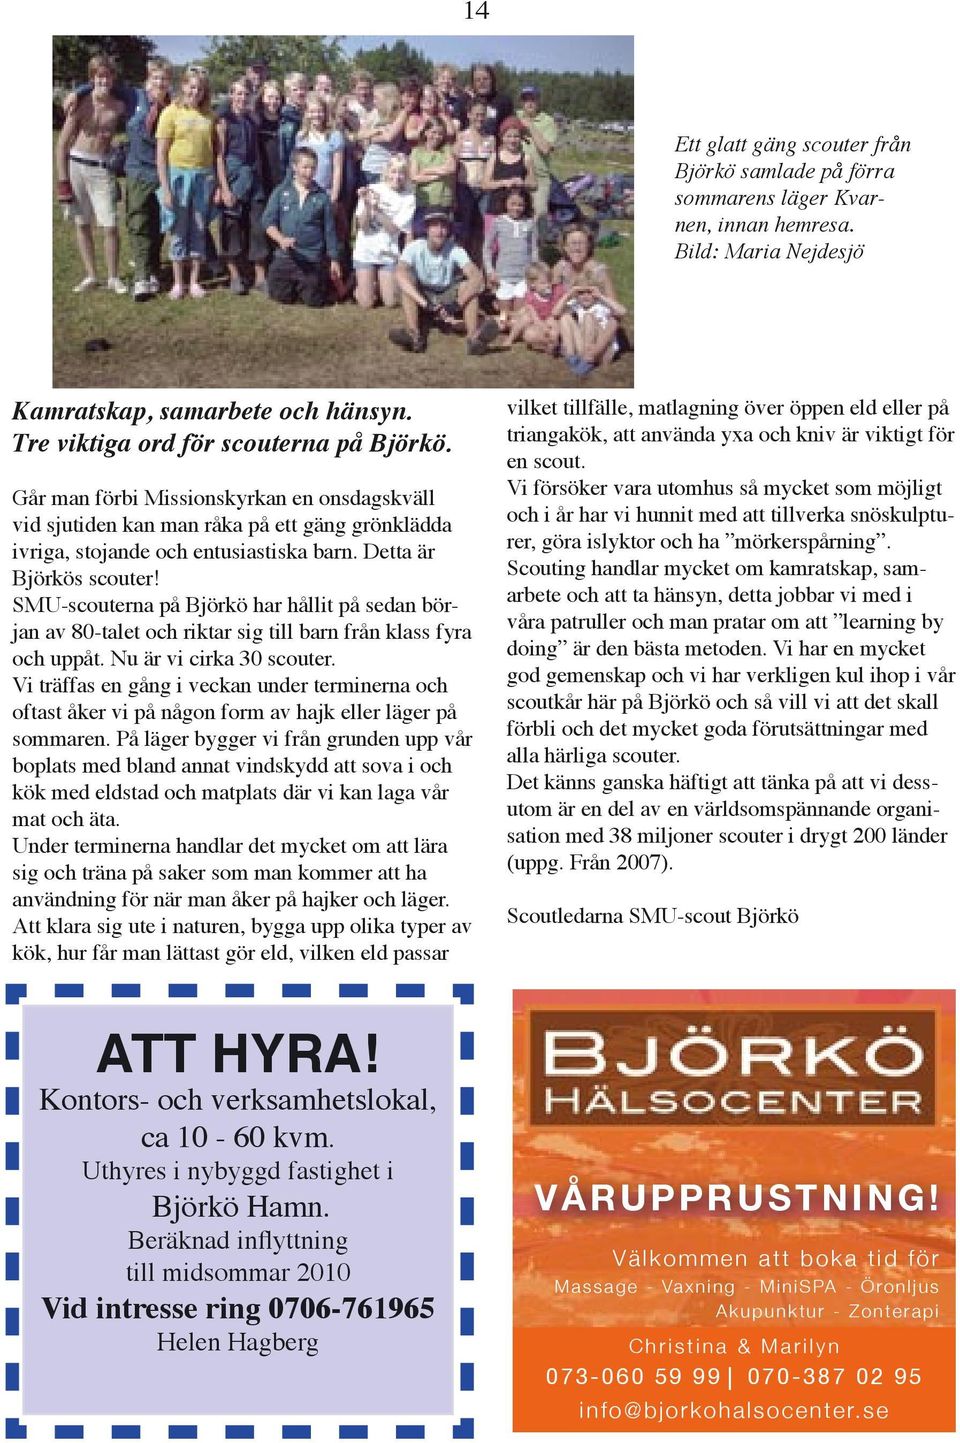 SMU-scouterna på Björkö har hållit på sedan början av 80-talet och riktar sig till barn från klass fyra och uppåt. Nu är vi cirka 30 scouter.